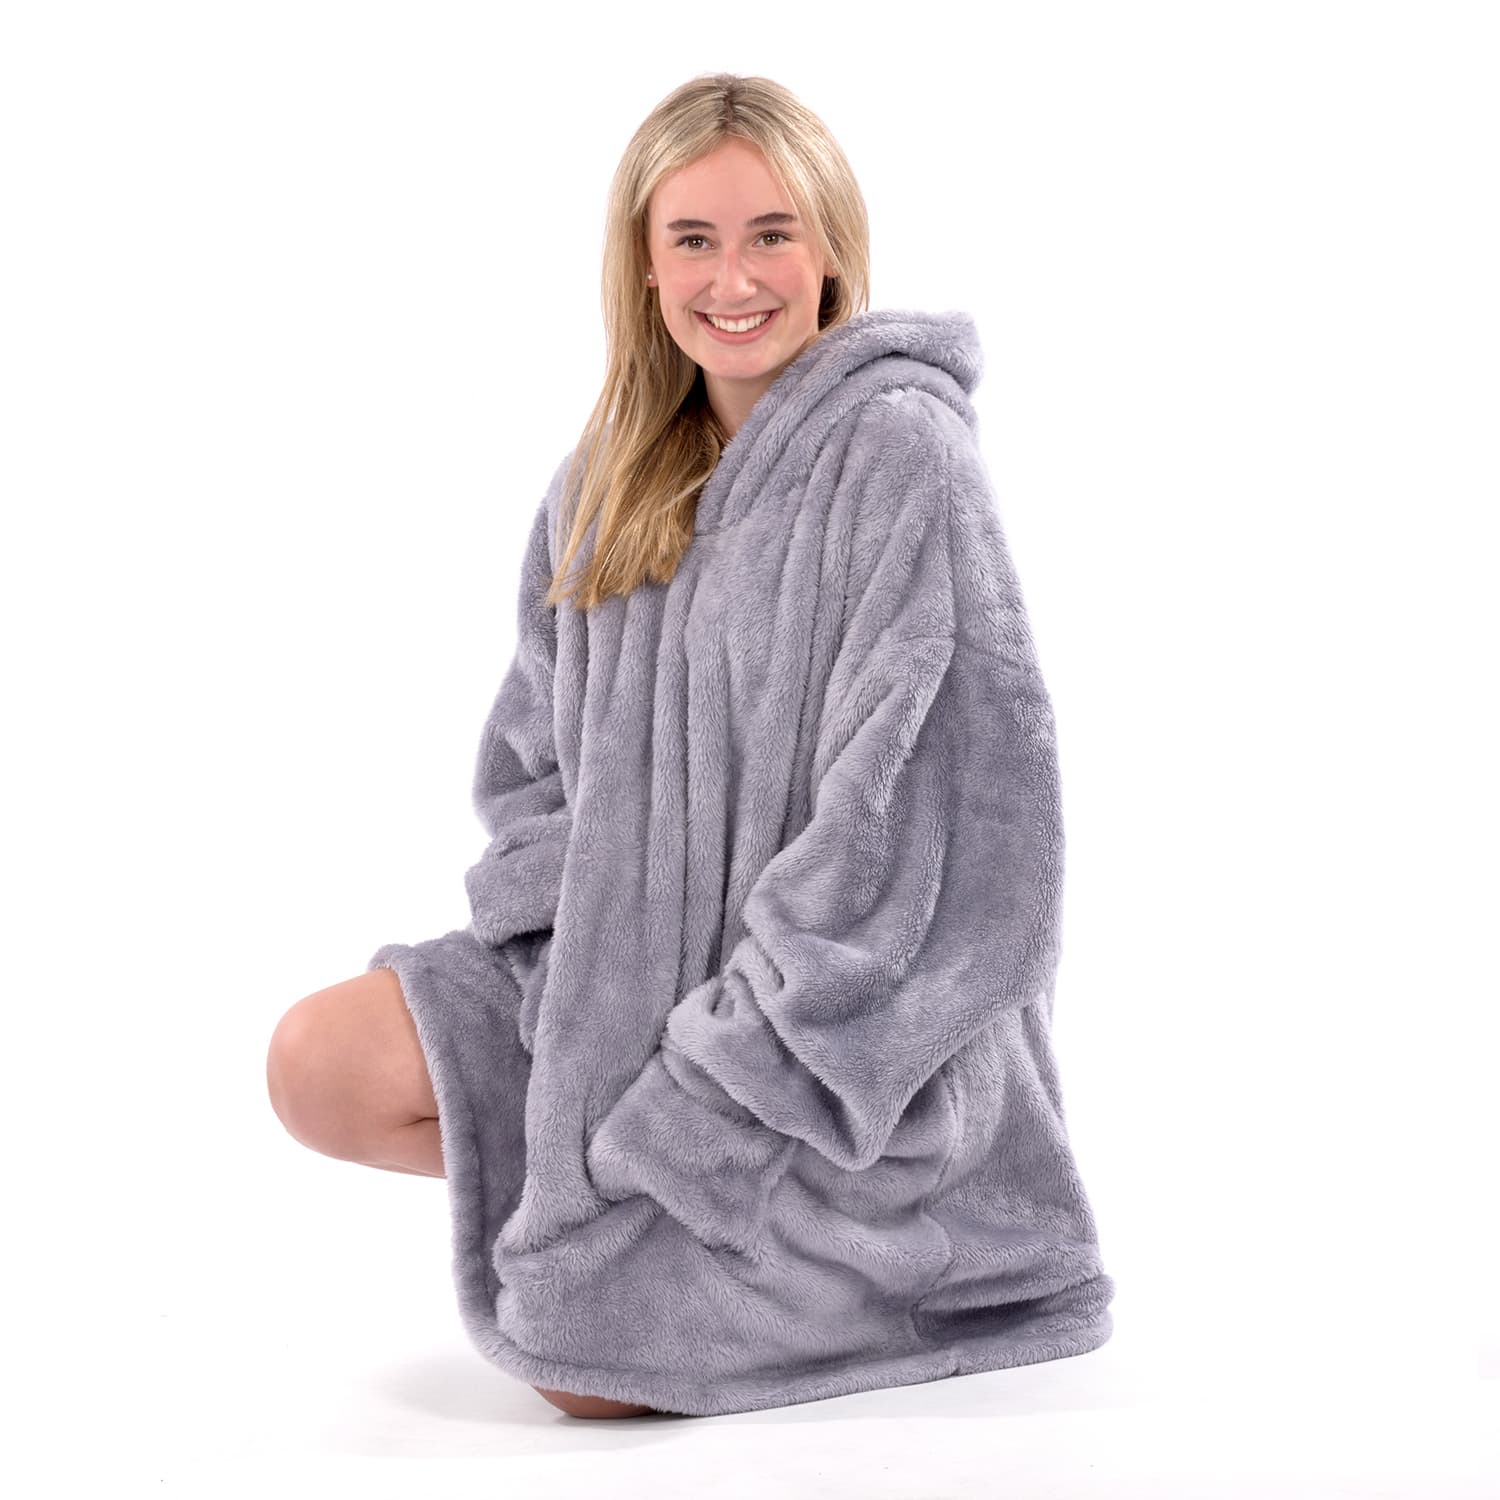 Snug-Rug Hoodie Blanket (Lilac Grey)